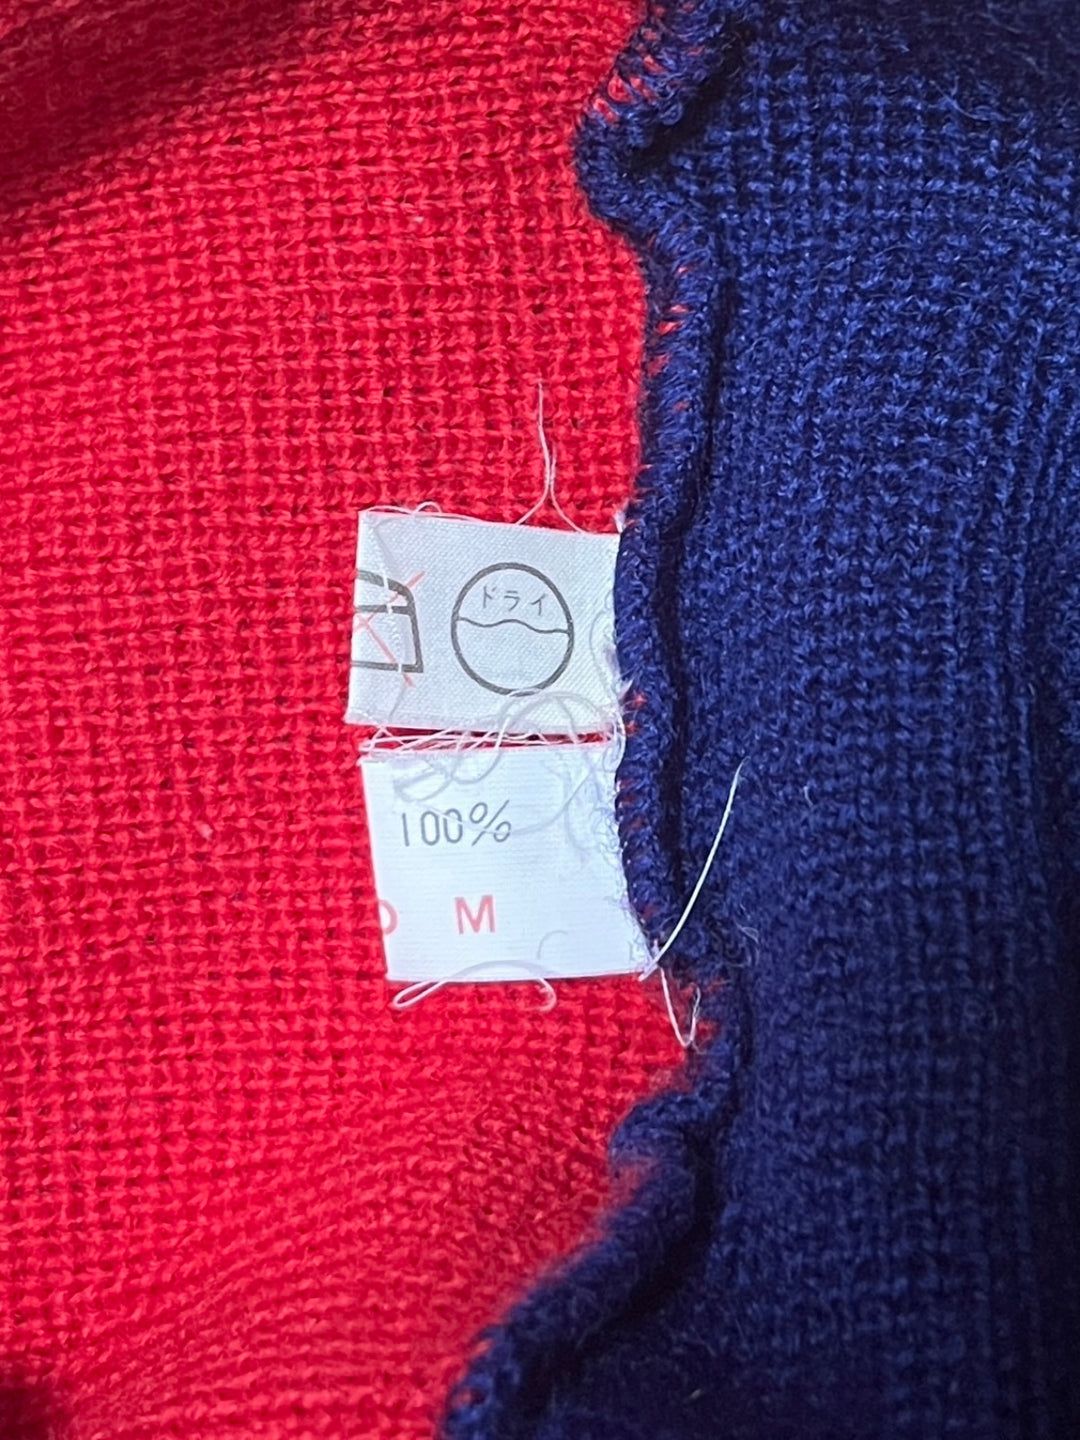 "HEAD" union jack inspire wool knit